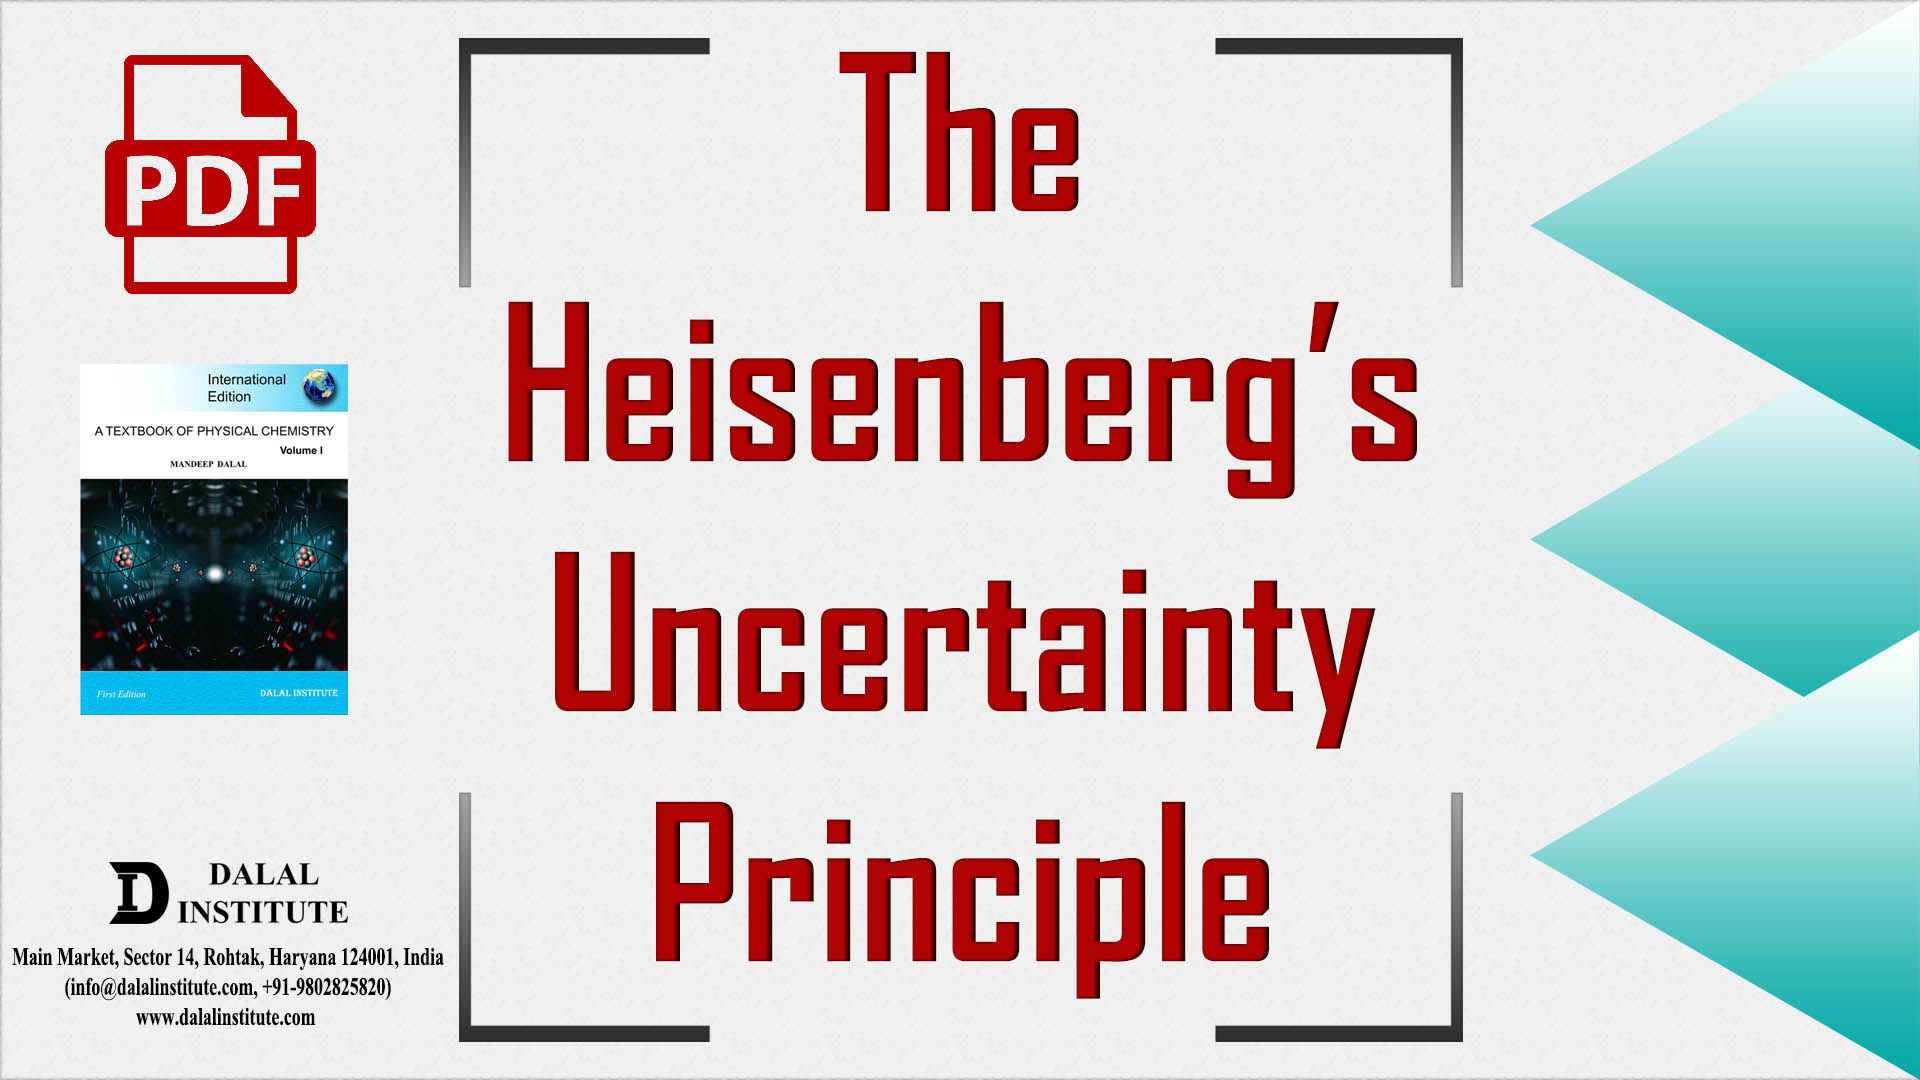 heisenberg principle misused